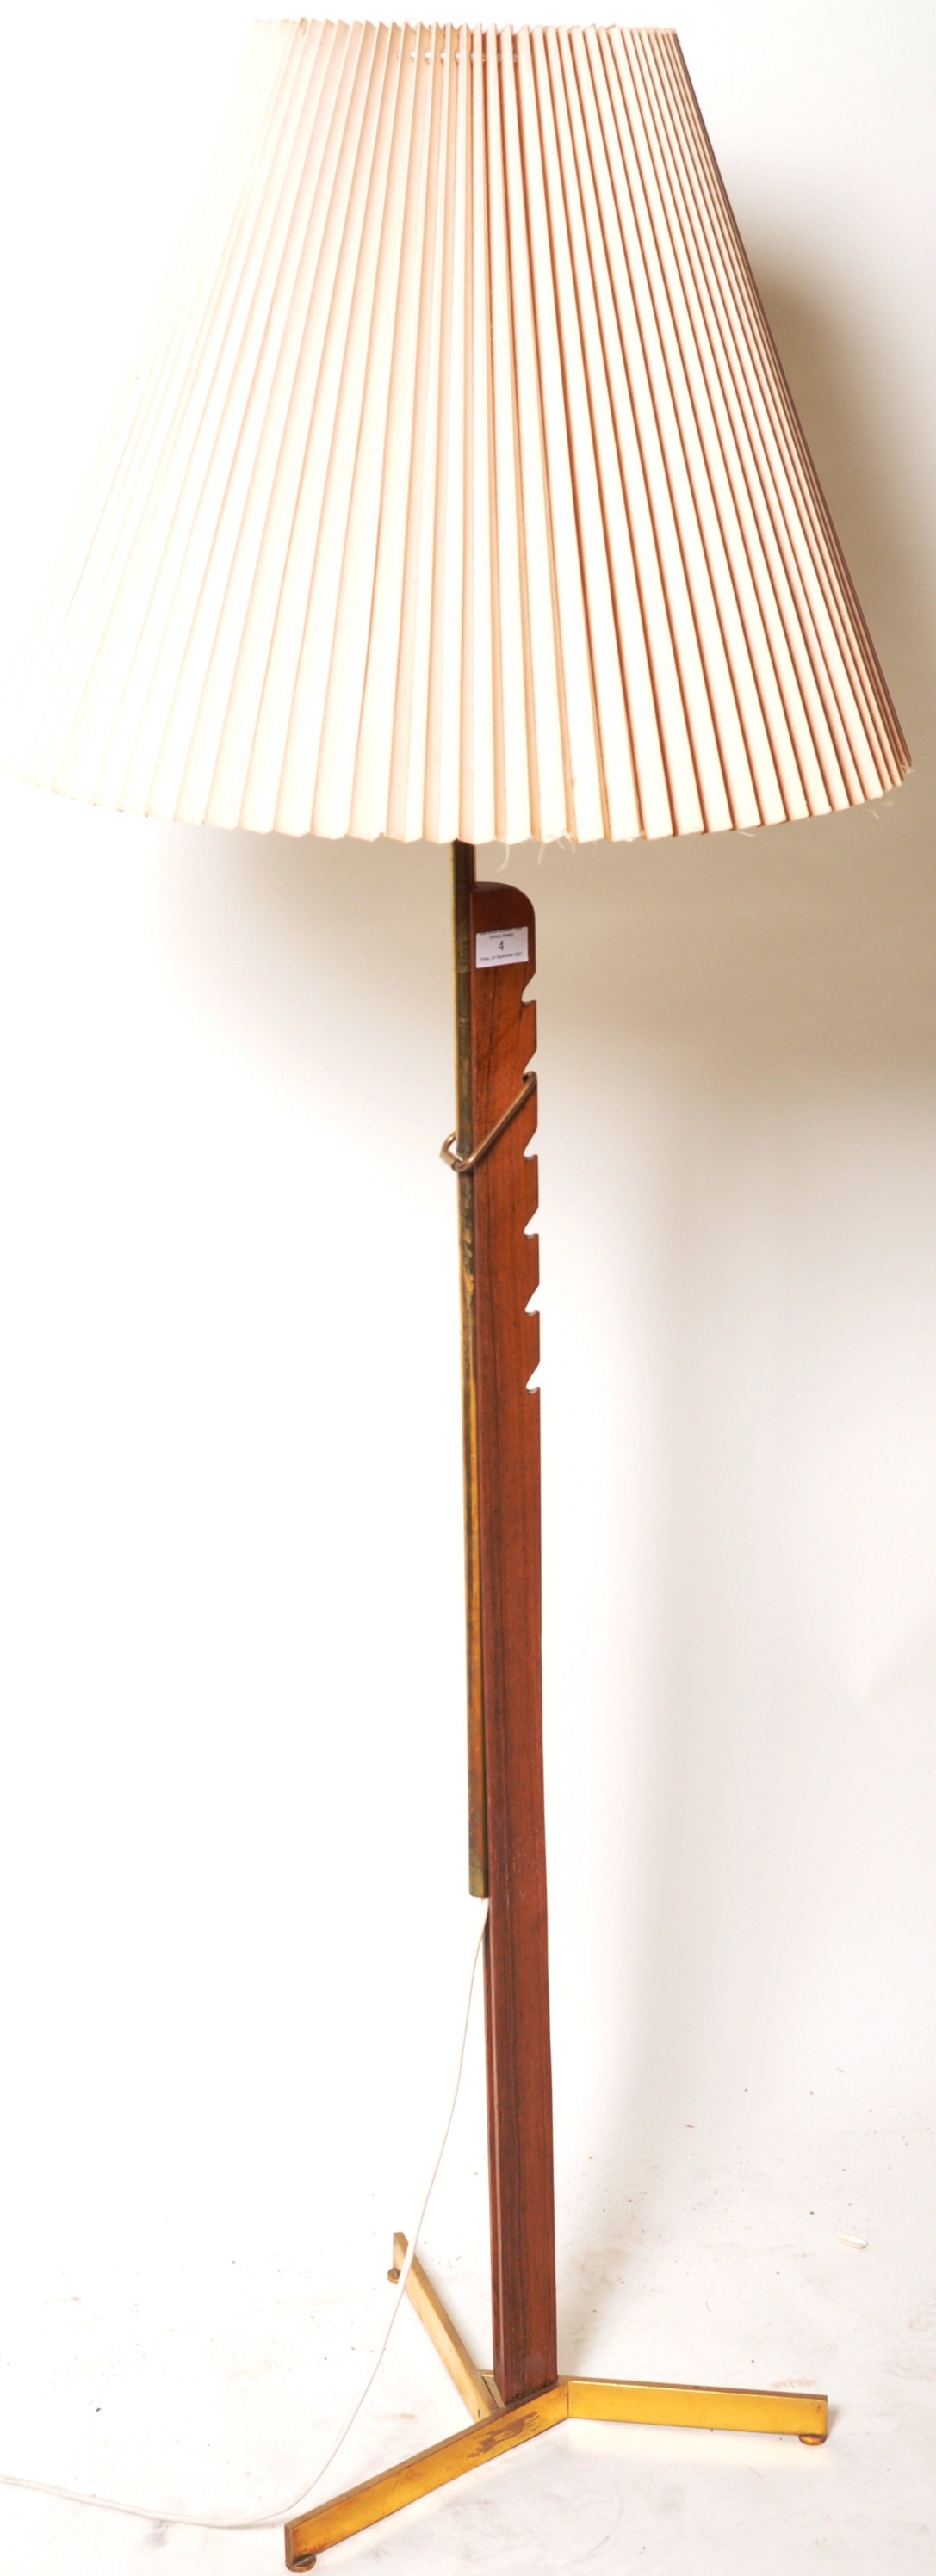 SVEND AAGE HOLM SORENSEN - 1960'S DANISH ADJUSTABLE FLOOR LAMP - Image 2 of 4